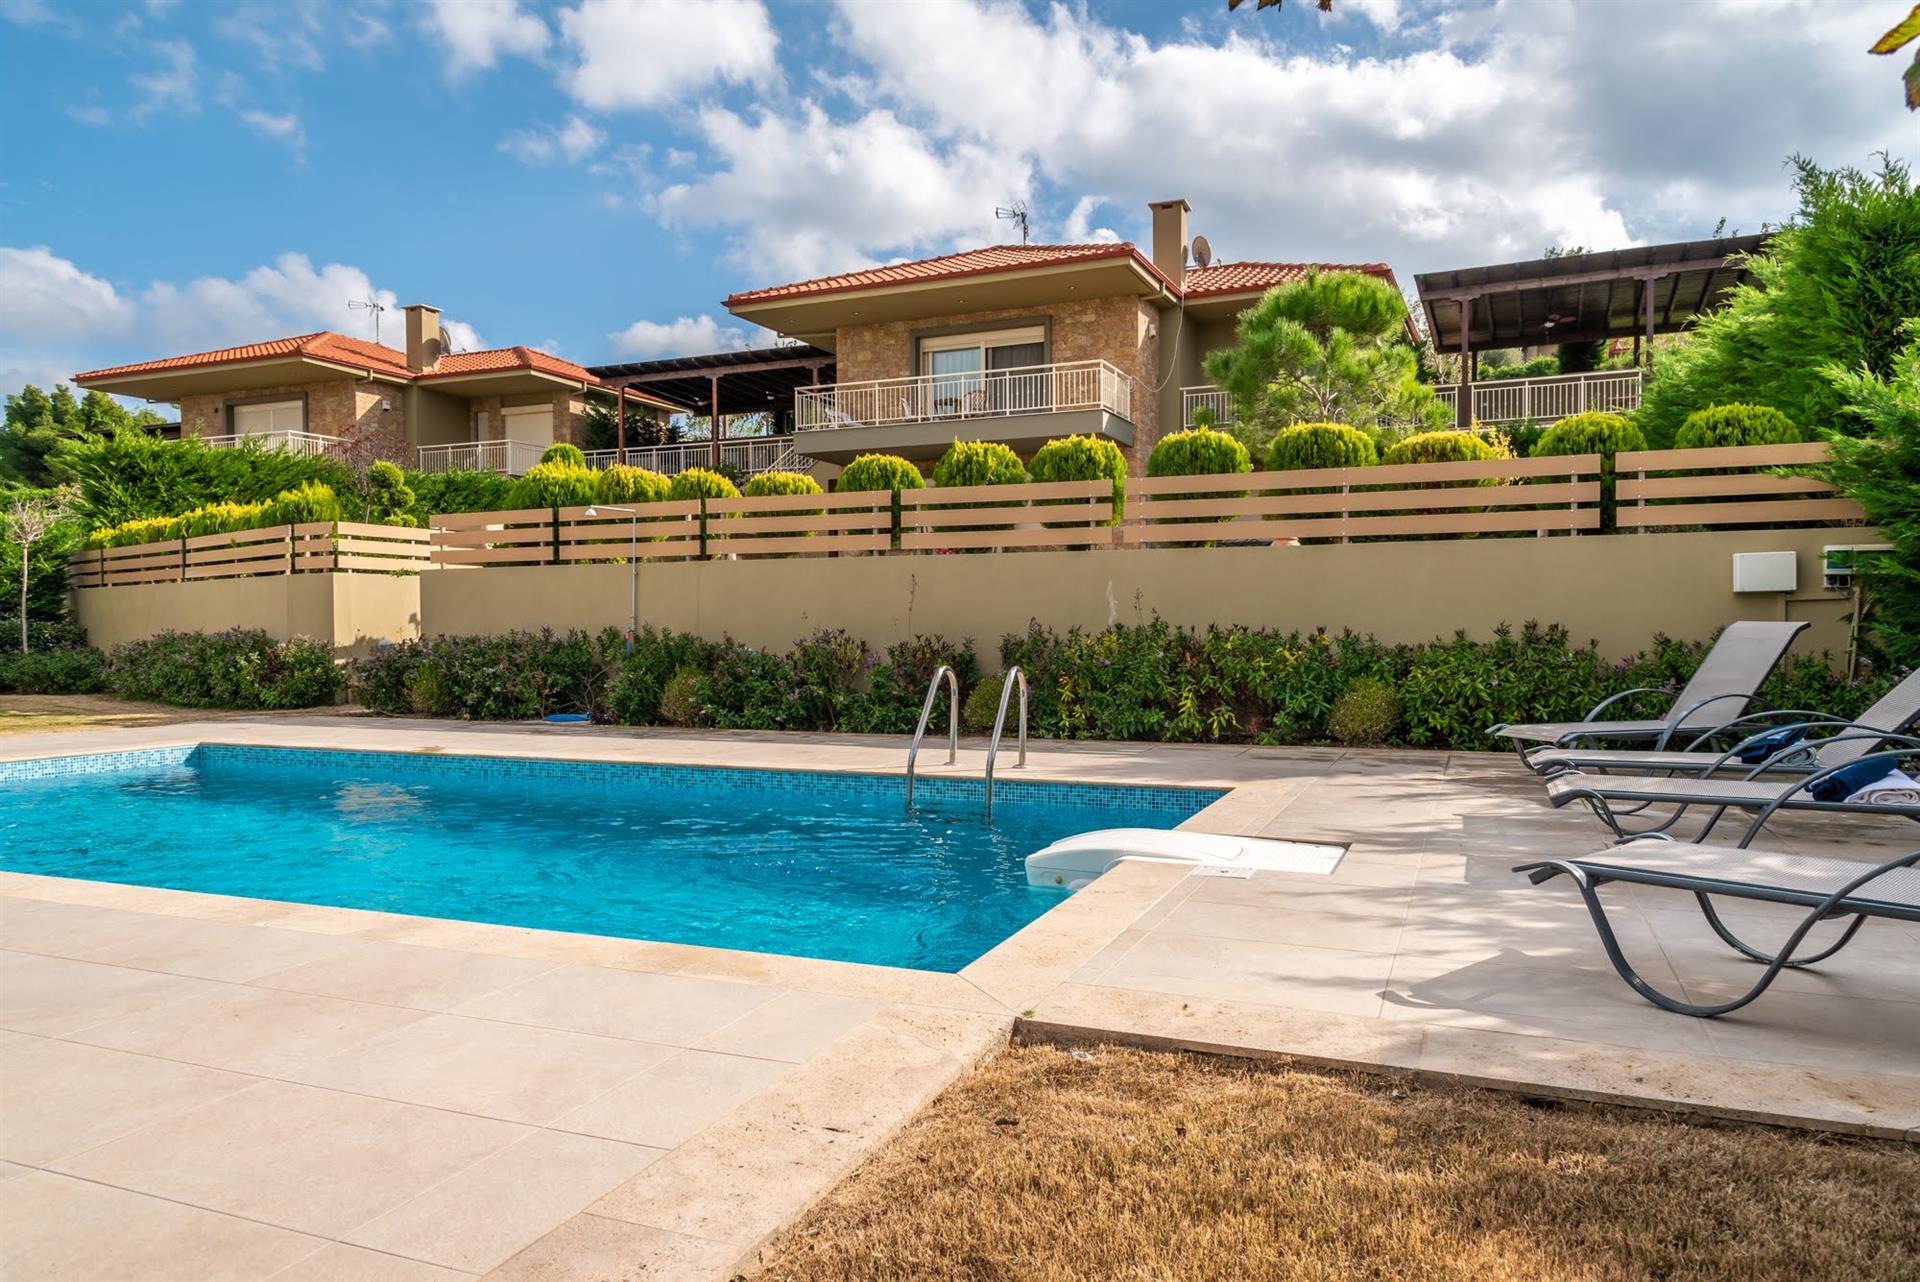 5Bd Villa mit Pool in Sani mit toller Aussicht, Pool und großem Garten